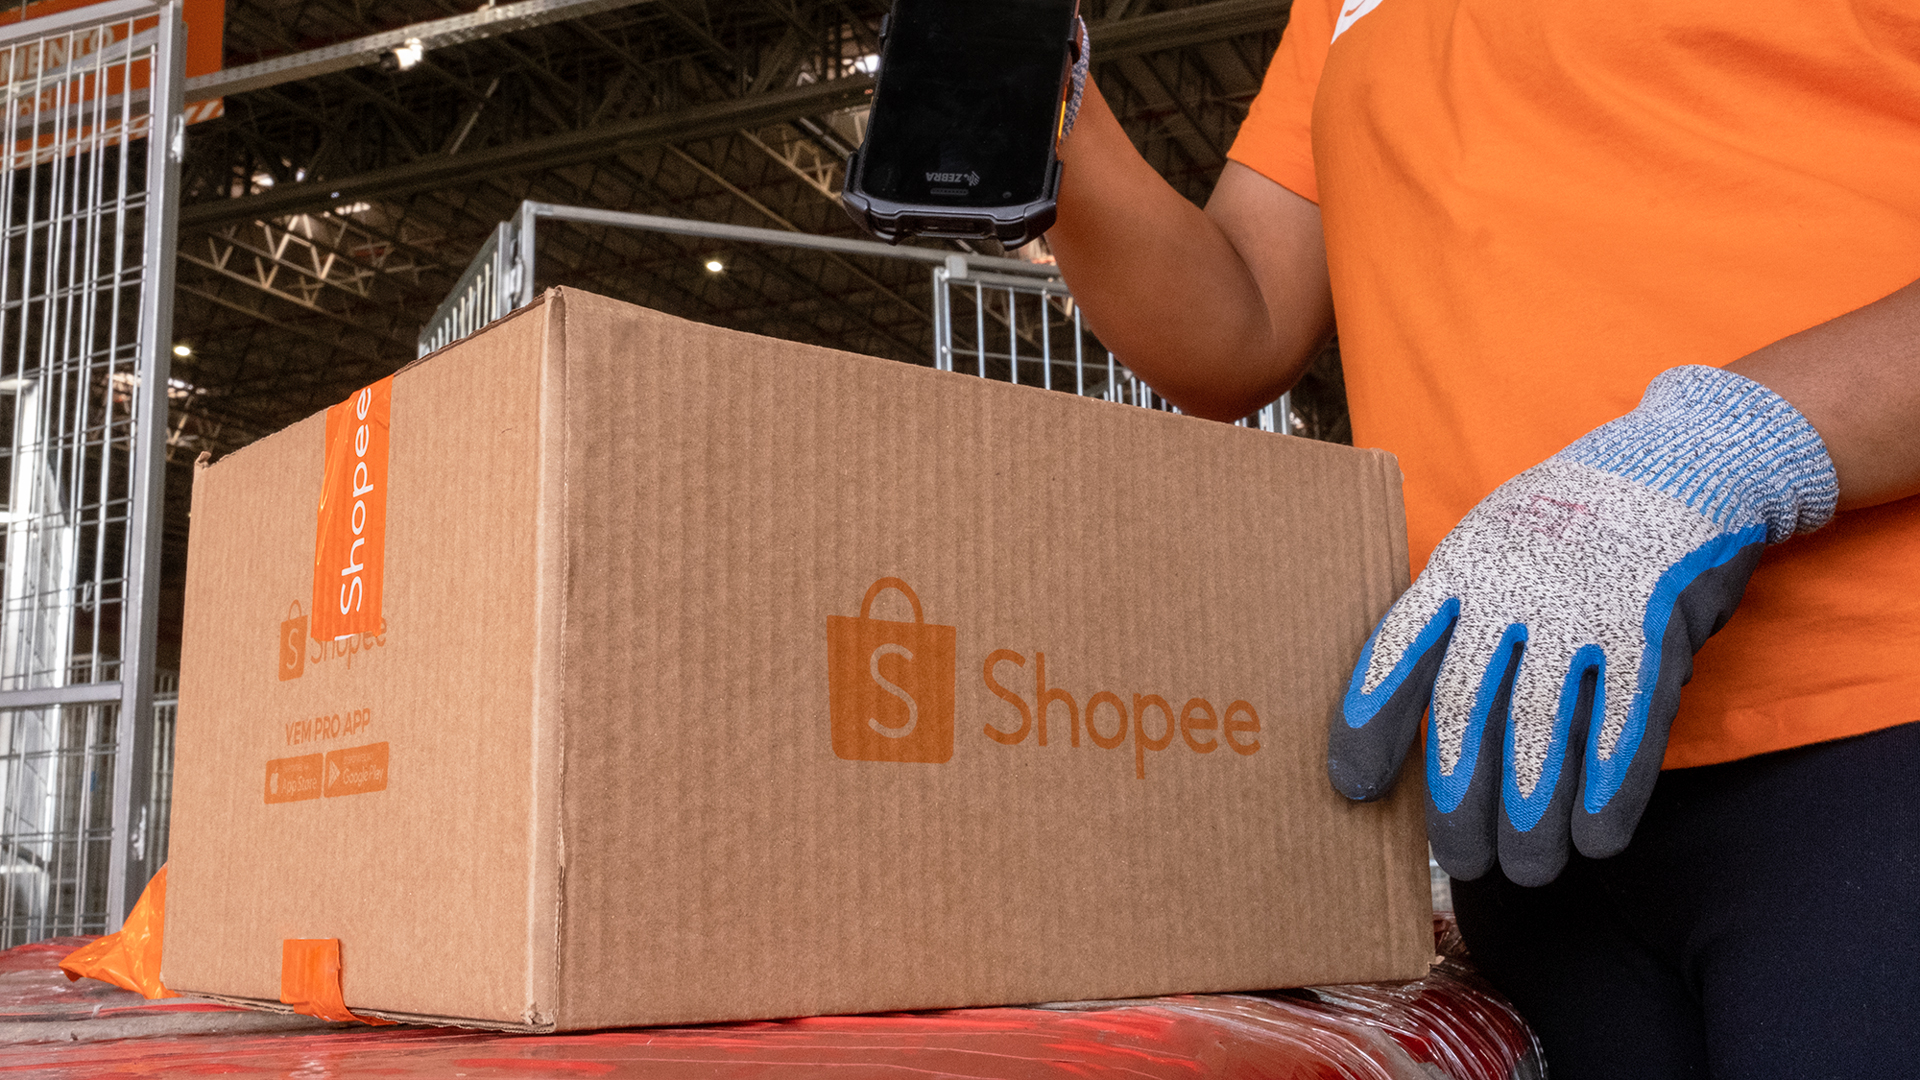 Shopee abre Centro de Distribuição e aumenta capacidade logística no Brasil  - Logweb - Notícias e informações sobre logística para o seu dia